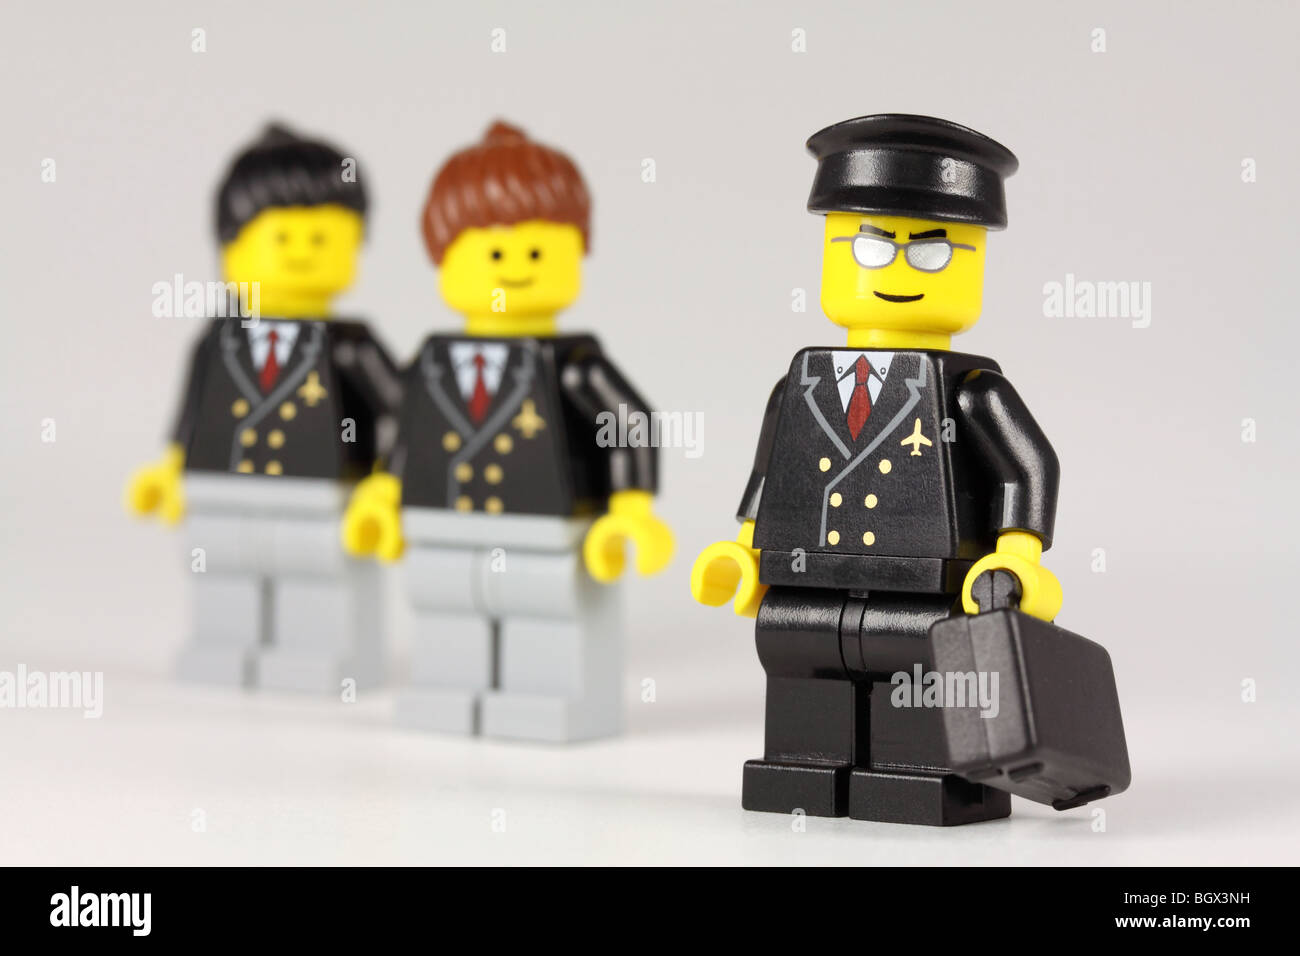 Lego piloto de línea aérea y la tripulación de cabina Foto de stock